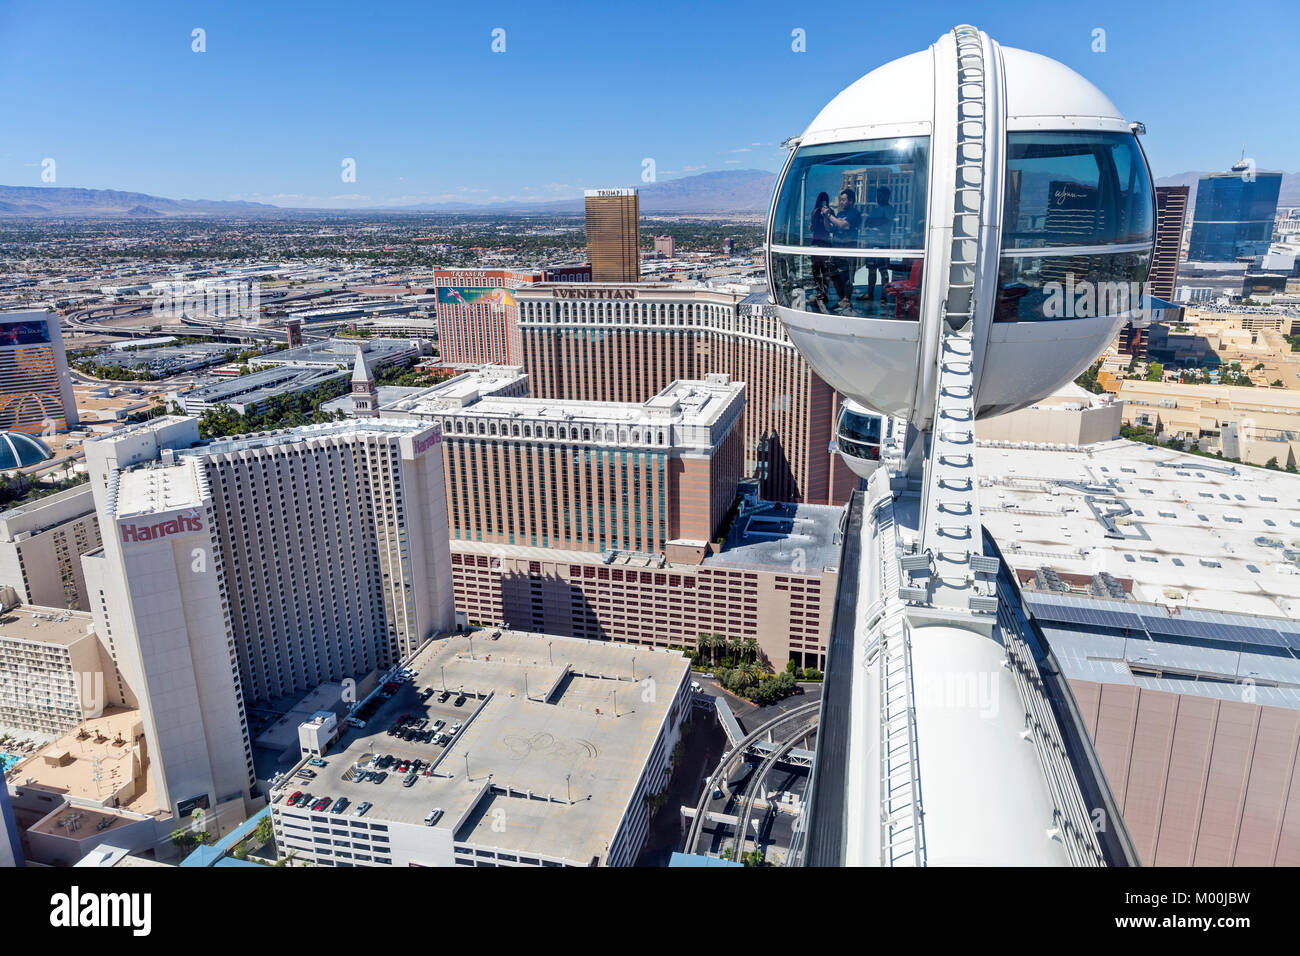 Un jour skyline vue de plusieurs casino and resort sur Las Vegas Blvd constituent la grande roue de rouleau à Las Vegas, Nevada. Banque D'Images